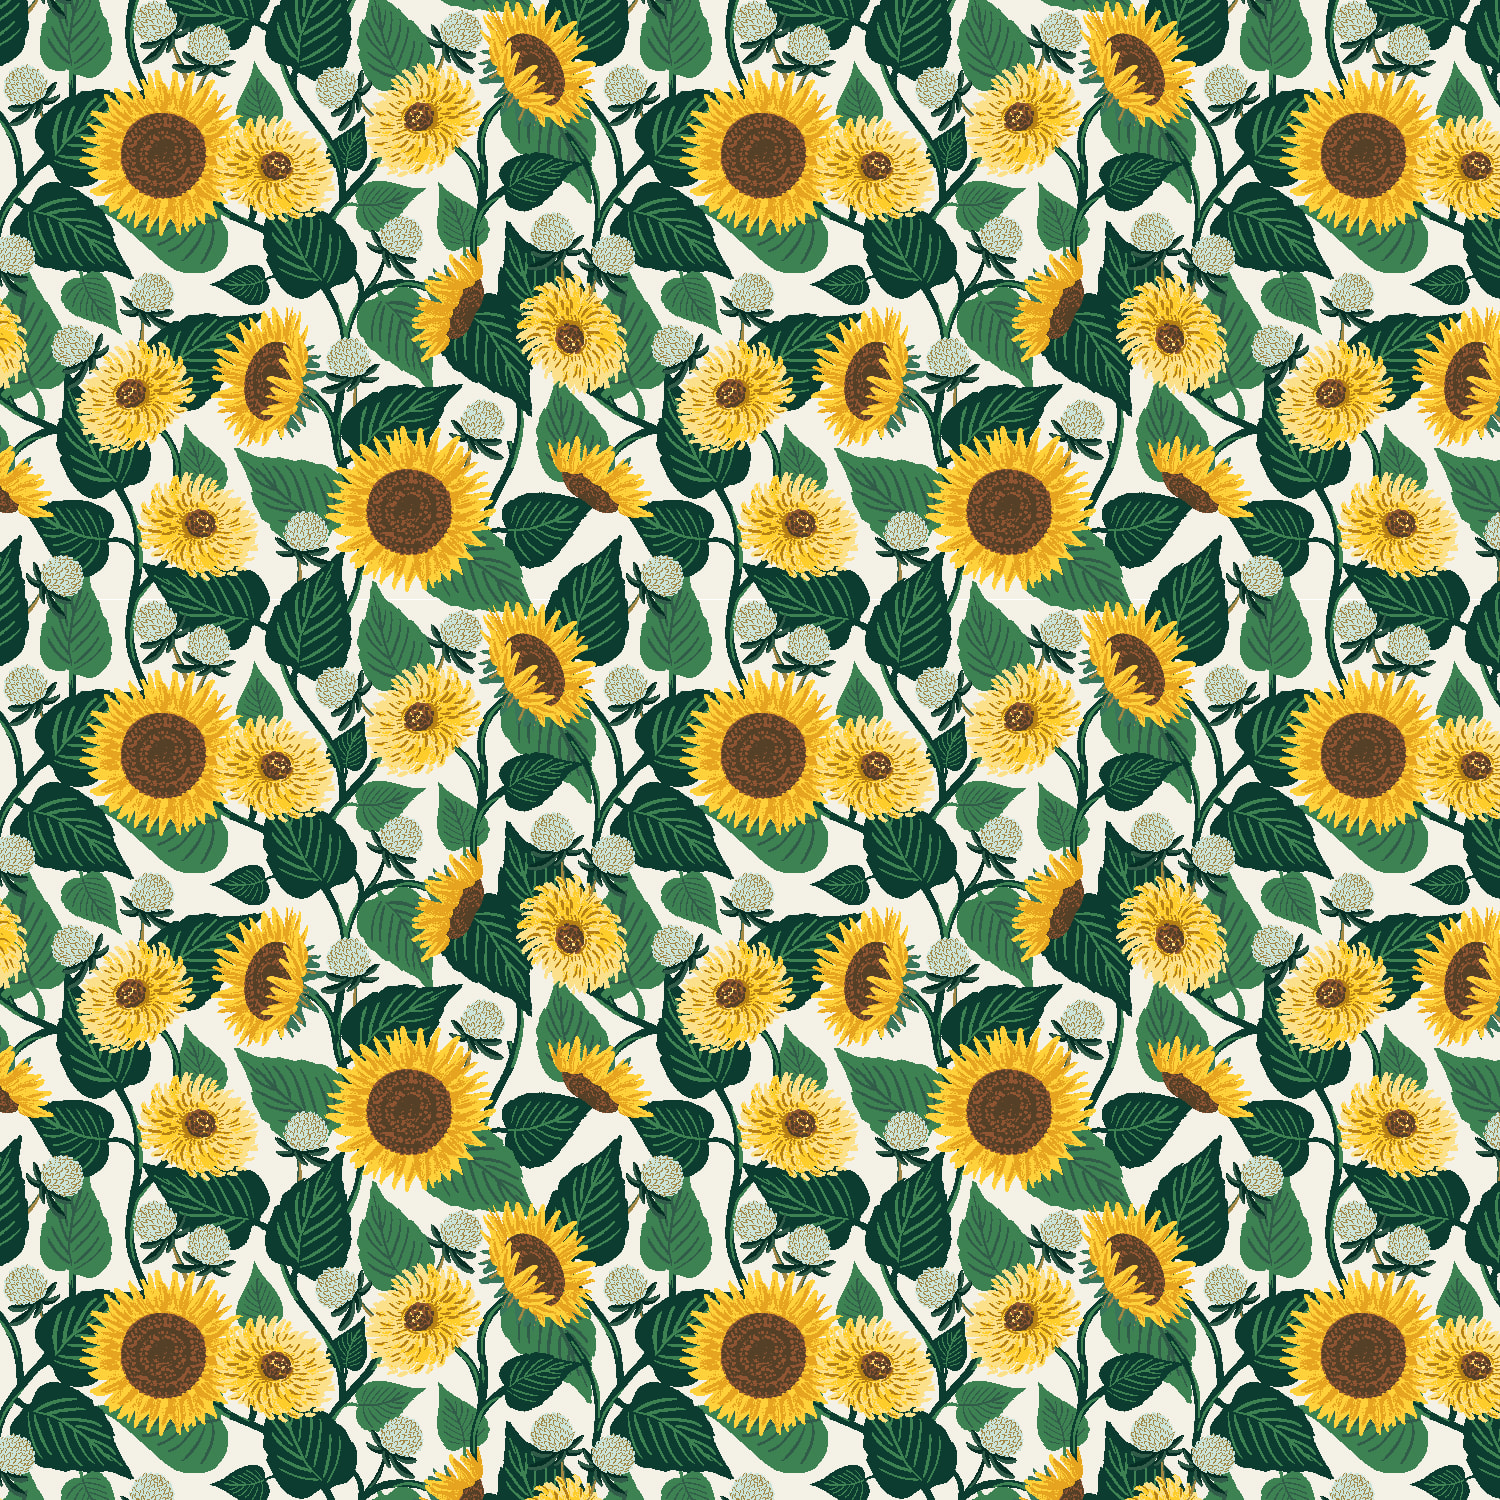 Sunflower Fields - Cream